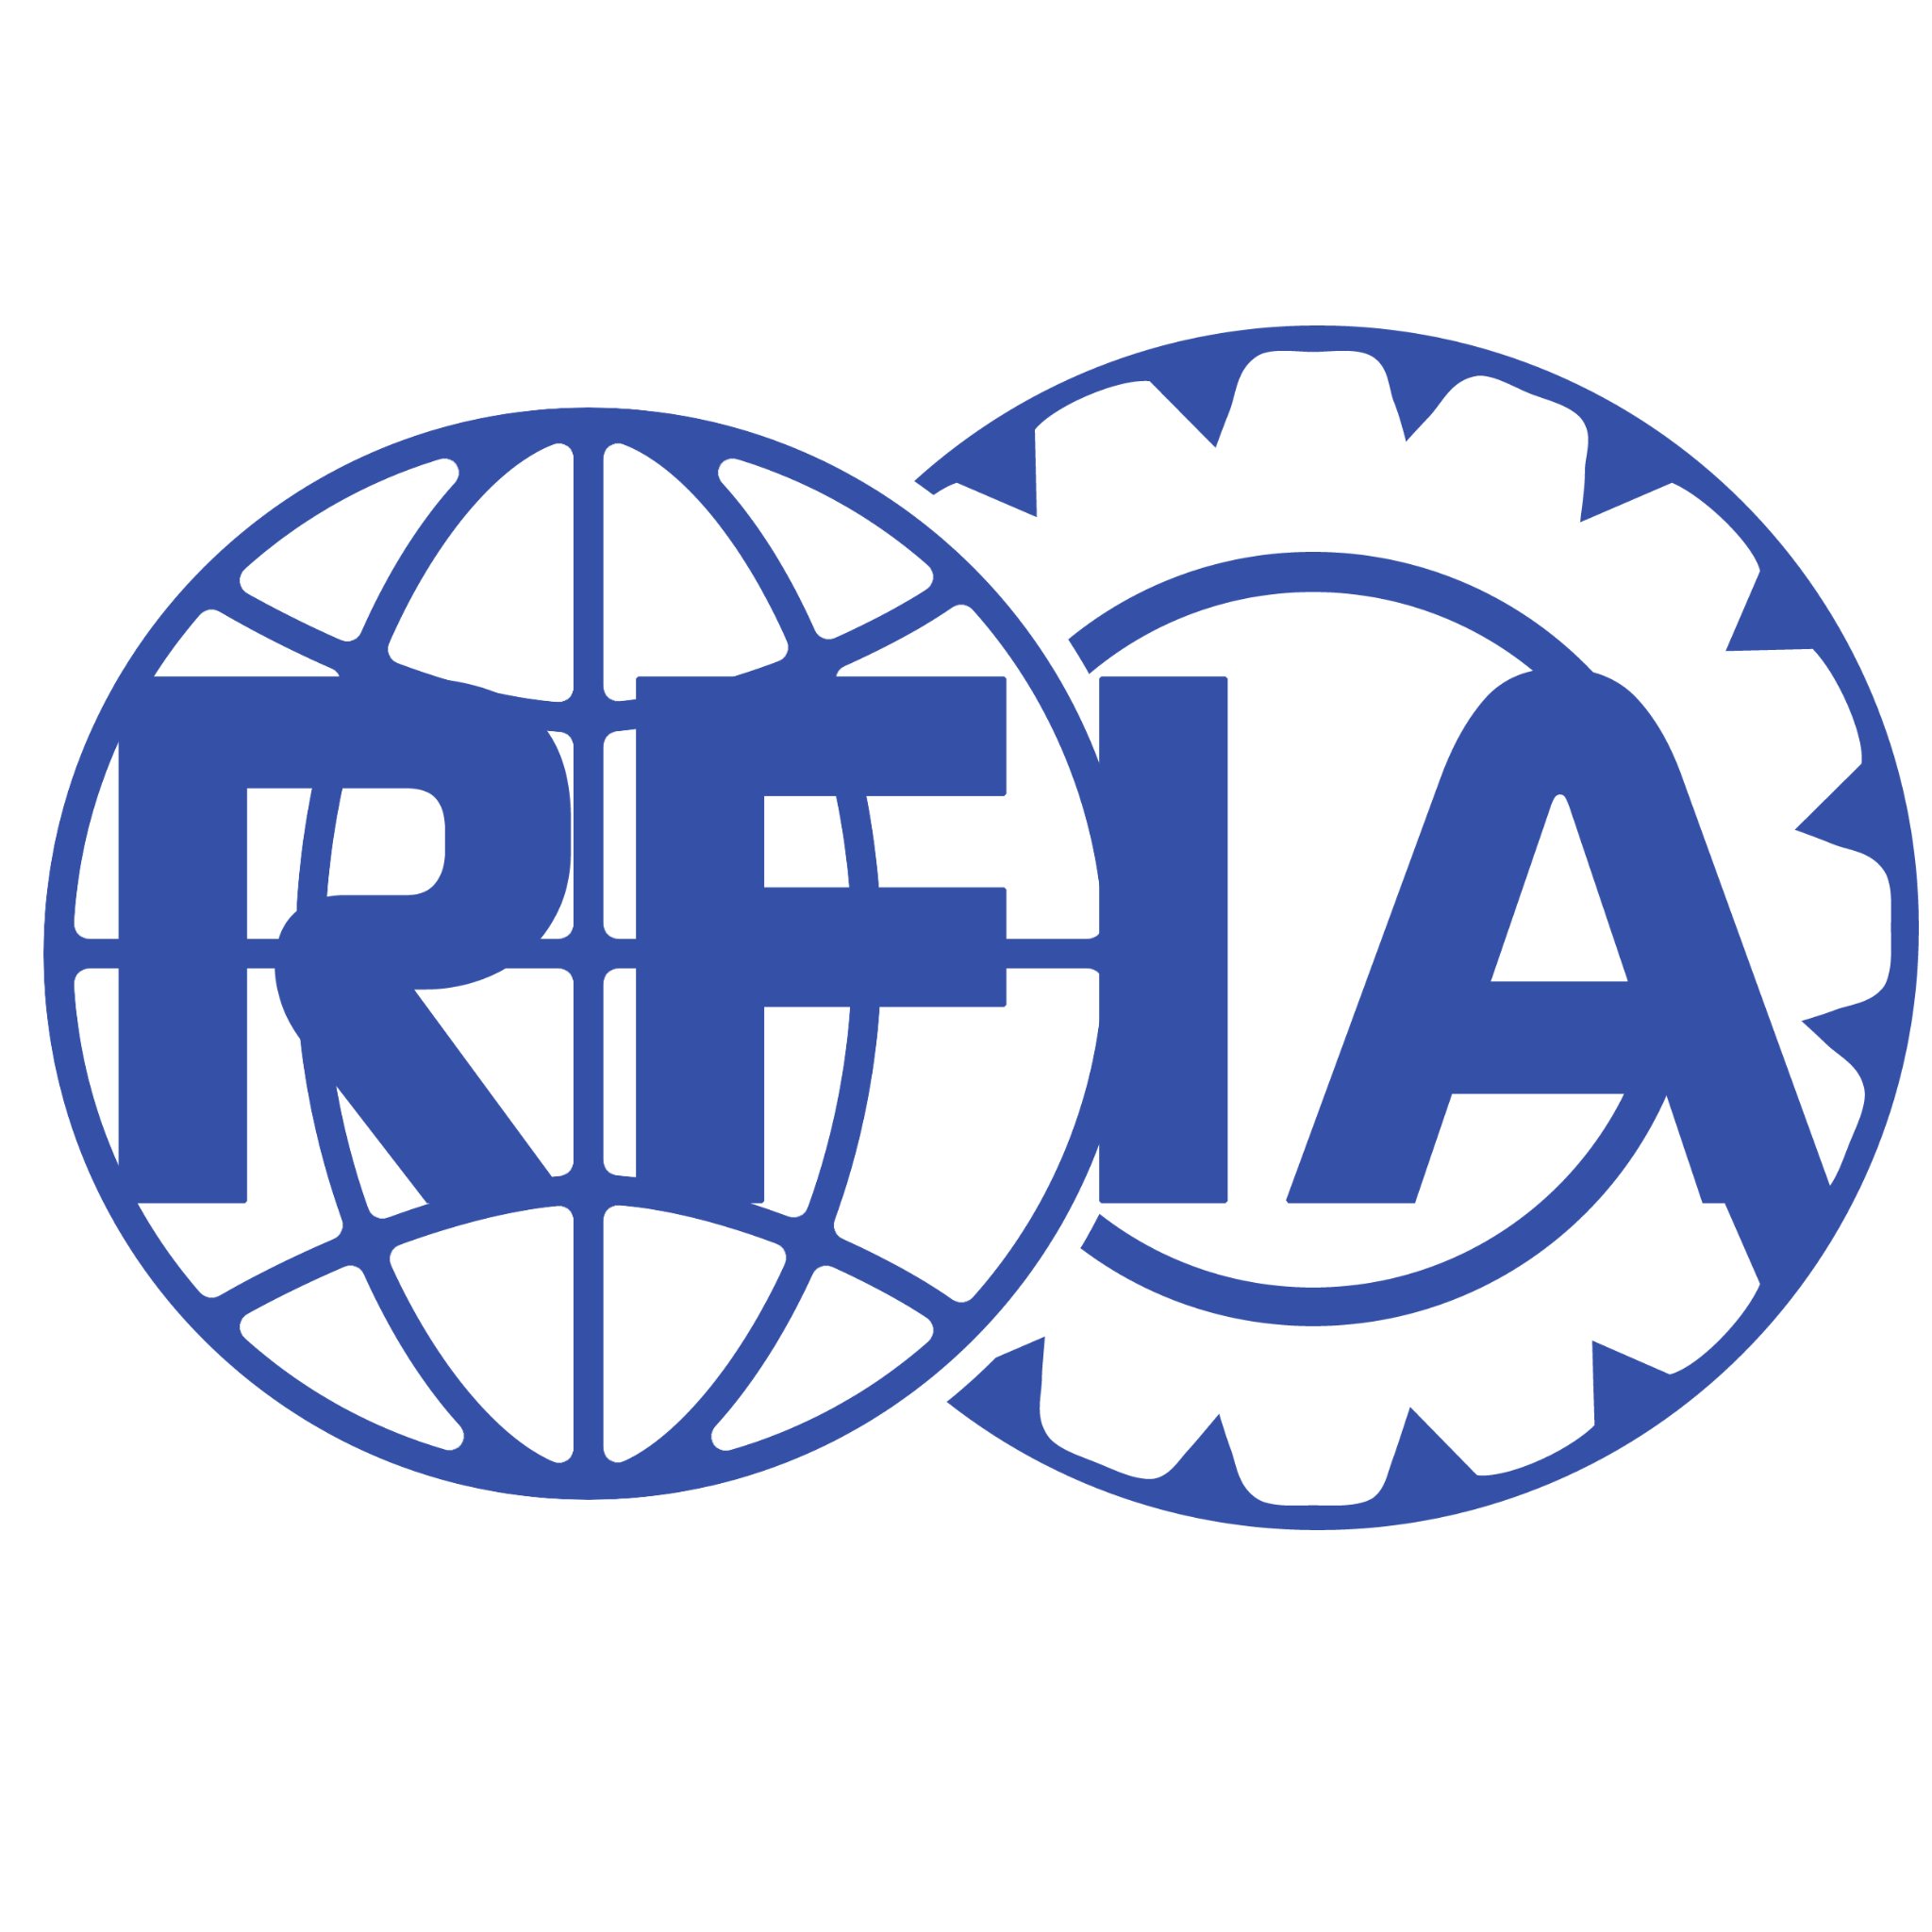 Rfia Roblox Formula One Rfiaone Twitter - rfia roblox formula one